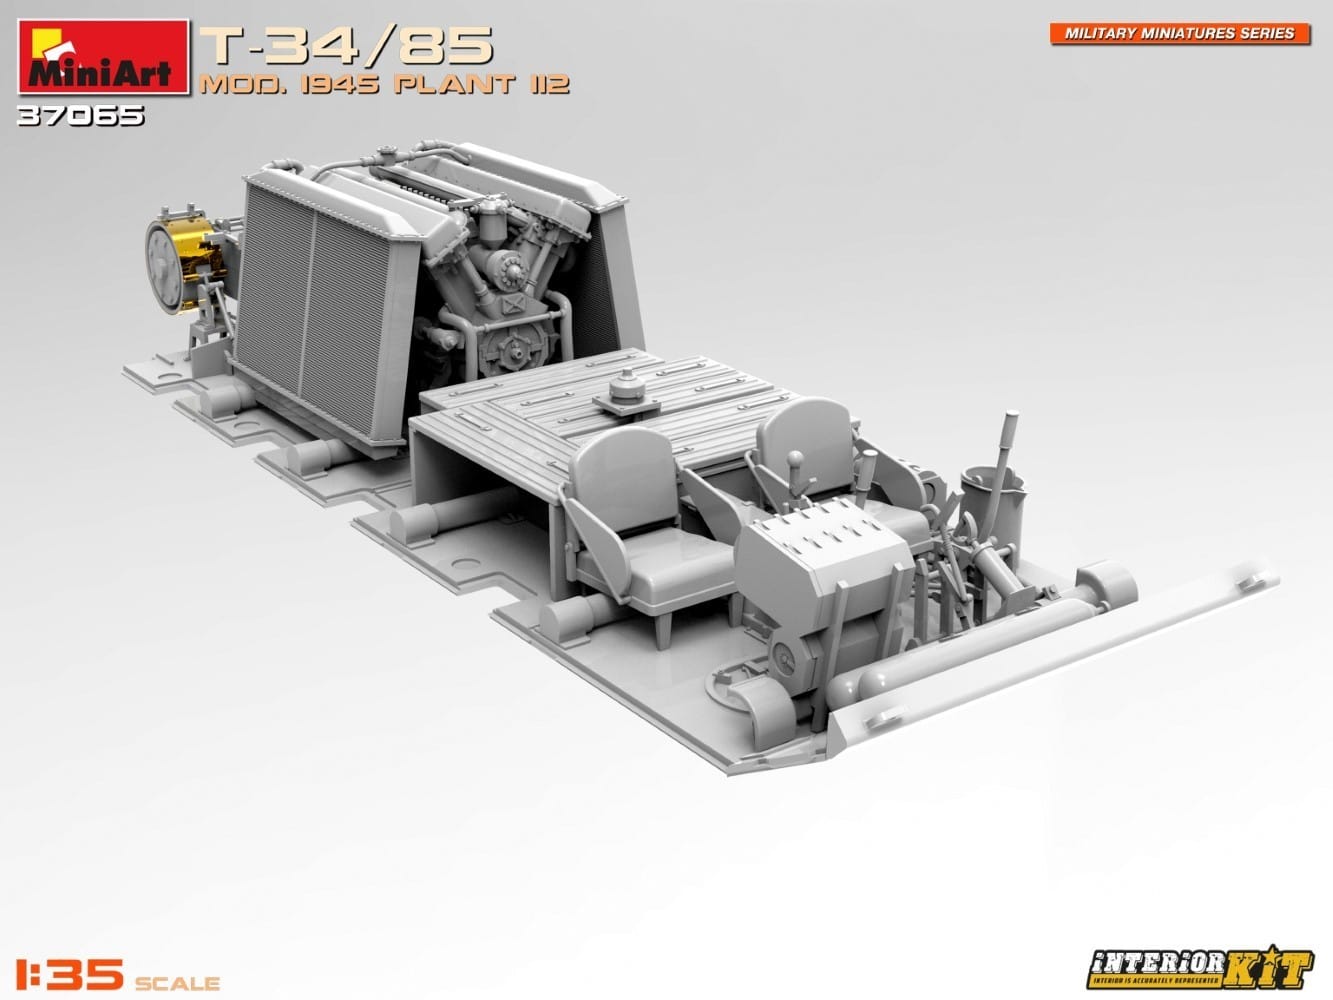 MiniArt 37065 T-3485 Mod. 1945. Plant 112. Interior Kit CAD-15